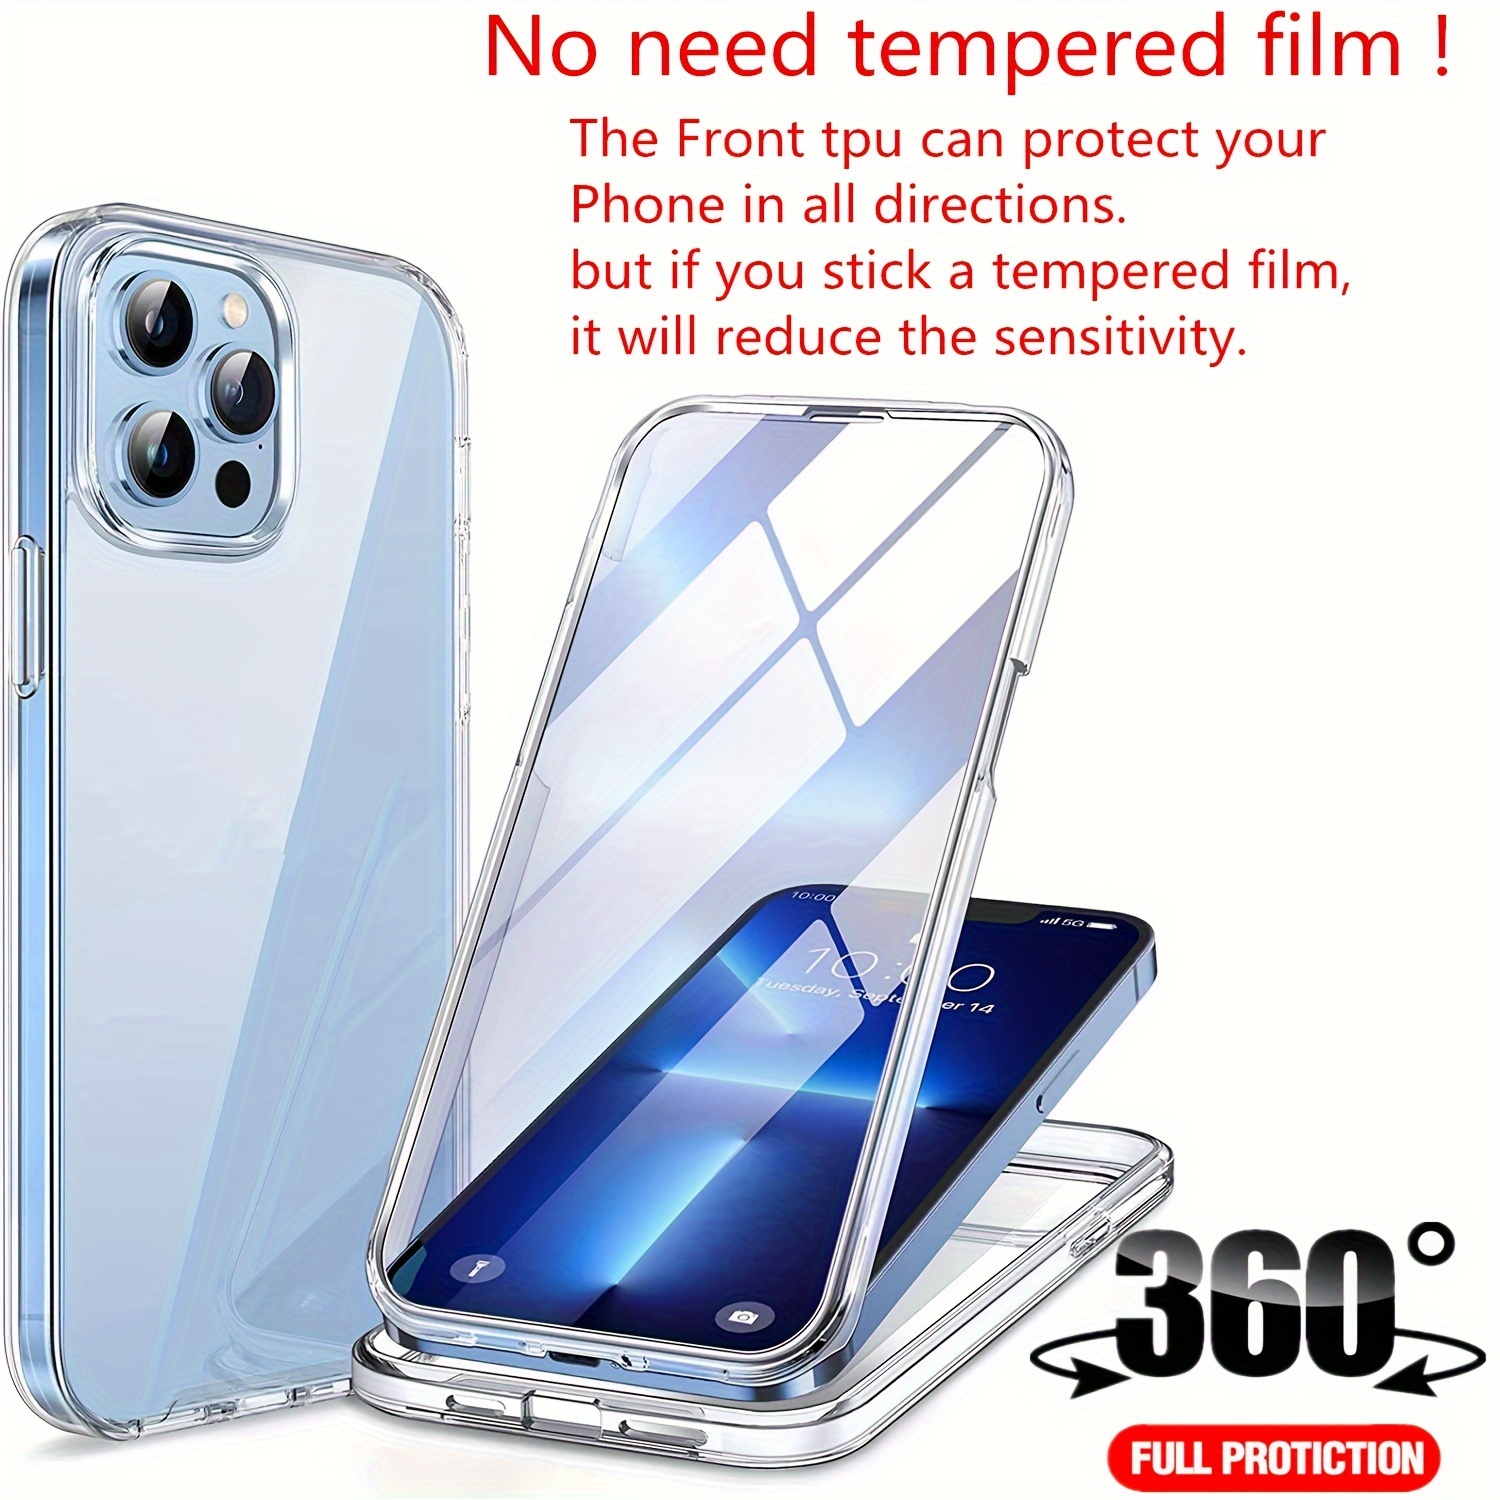  Plus Mi Life Funda de protección de doble capa compatible con iPhone  12 Mini/12 Pro Max Case a prueba de golpes híbrido resistente funda para  teléfono (negro, iPhone 12 Mini) 